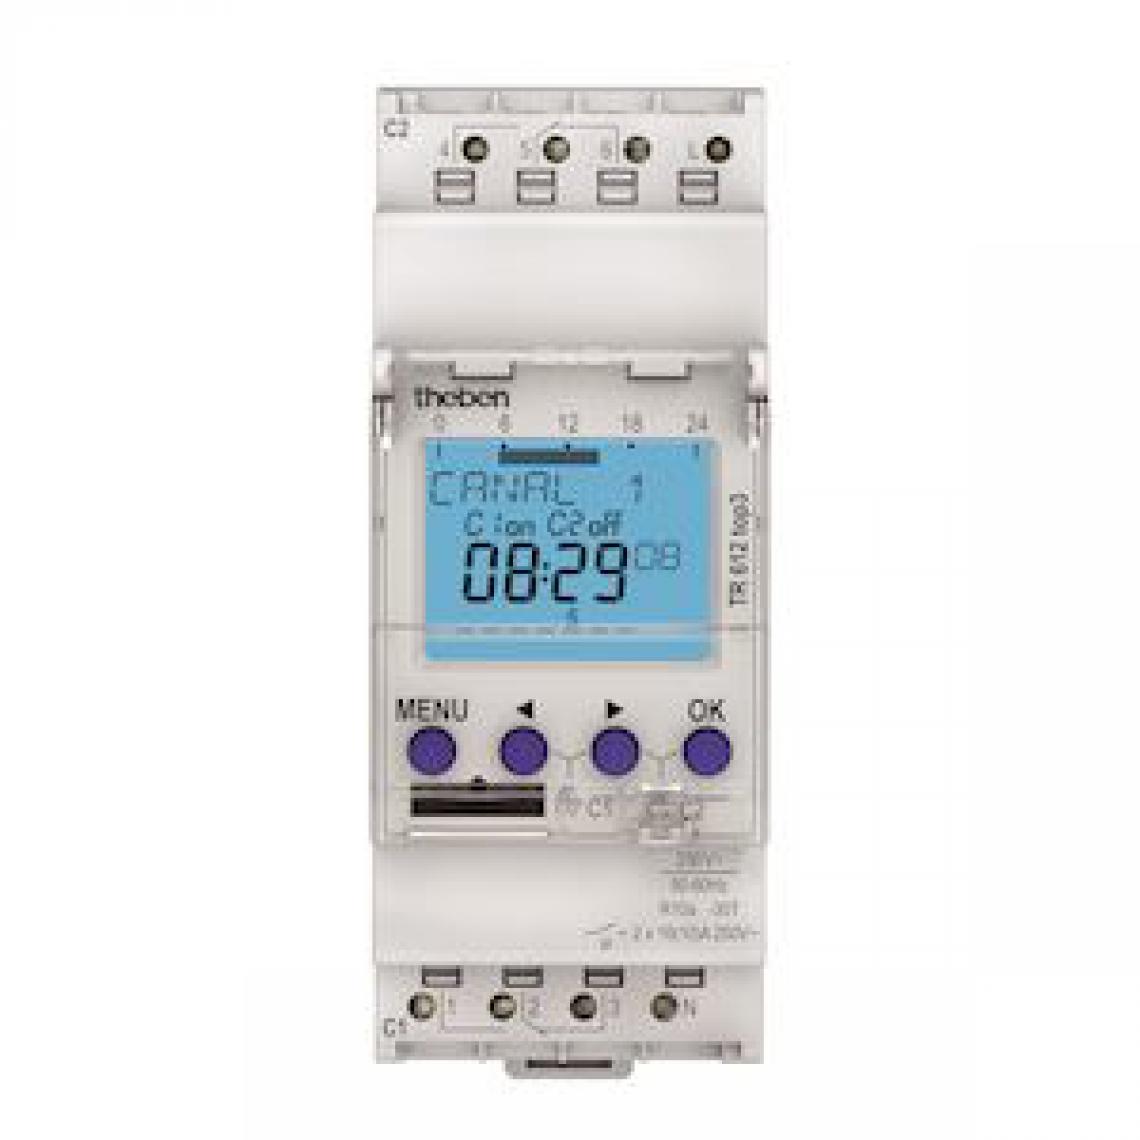 Theben - interrupteur horaire - digital - 24h / 7j - 2 modules - 2 contacts - 230v - compatible obelis - theben 6120130 - Télérupteurs, minuteries et horloges